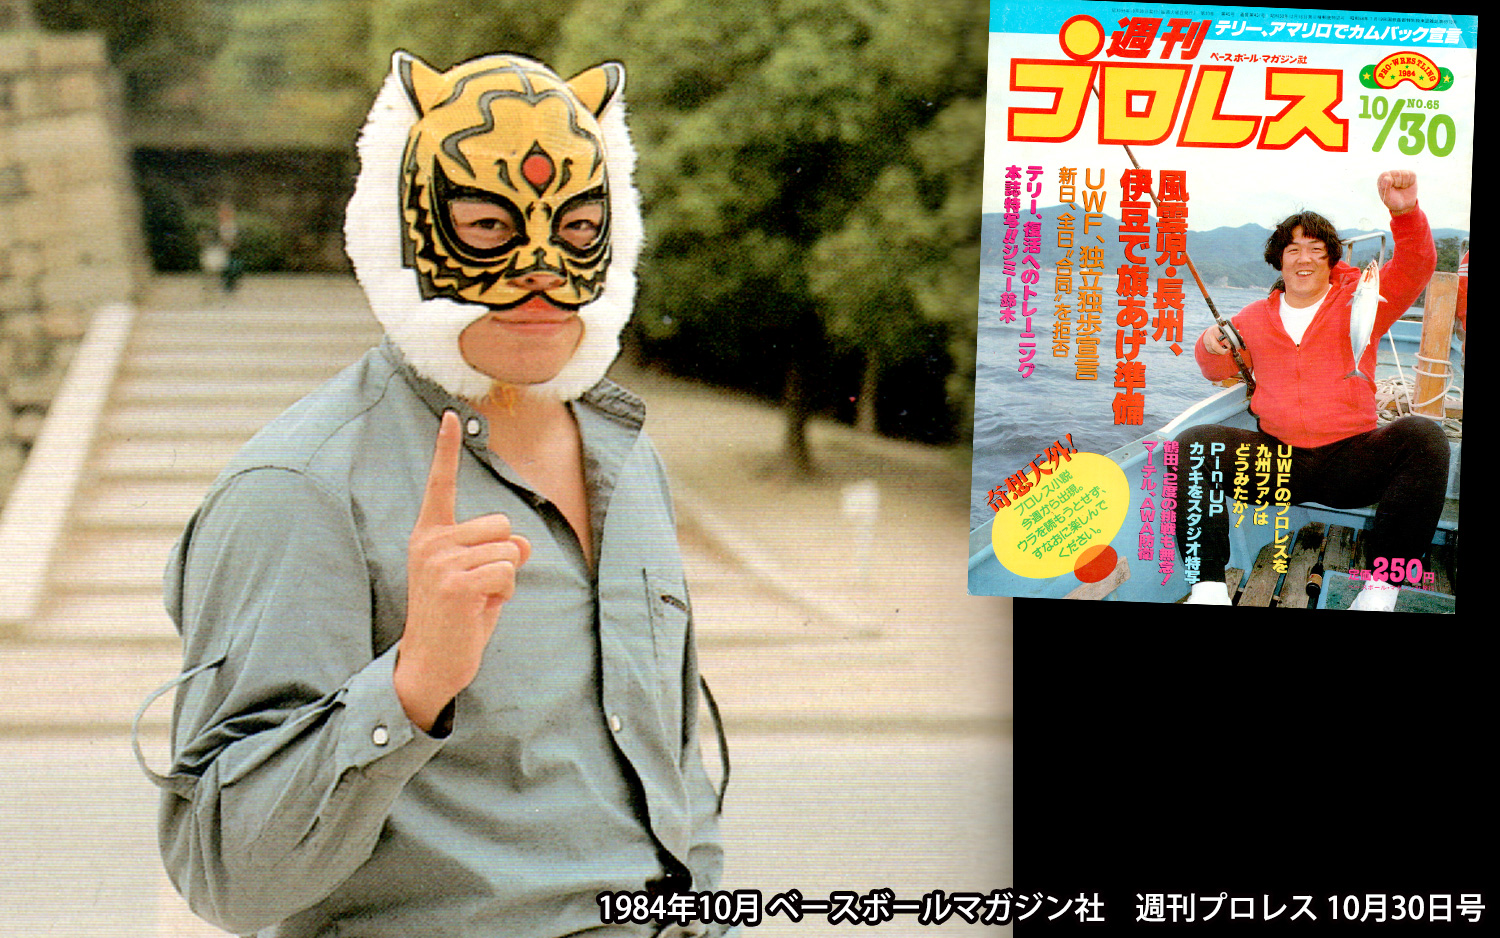 12540円 定番の人気シリーズPOINT(ポイント)入荷 2代目タイガーマスク プロレスマスク